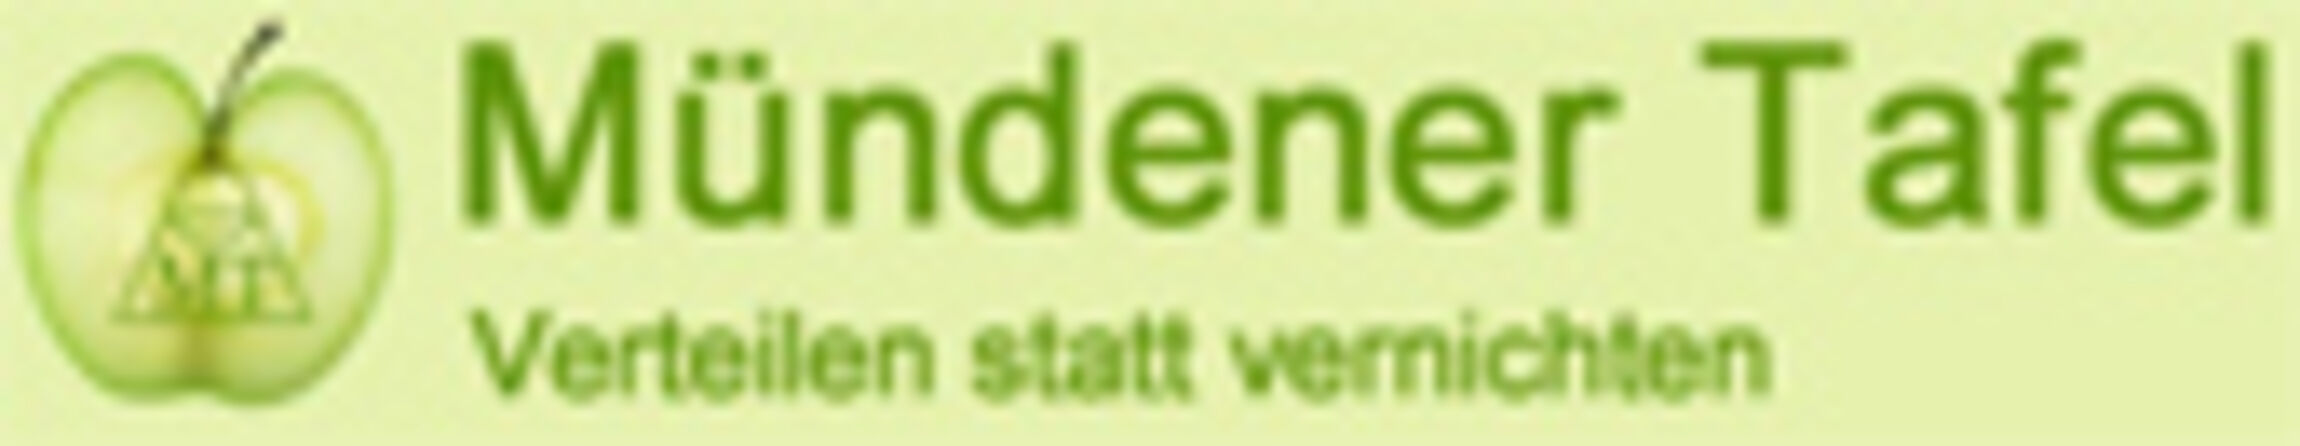 logo_Muendener_Tafel